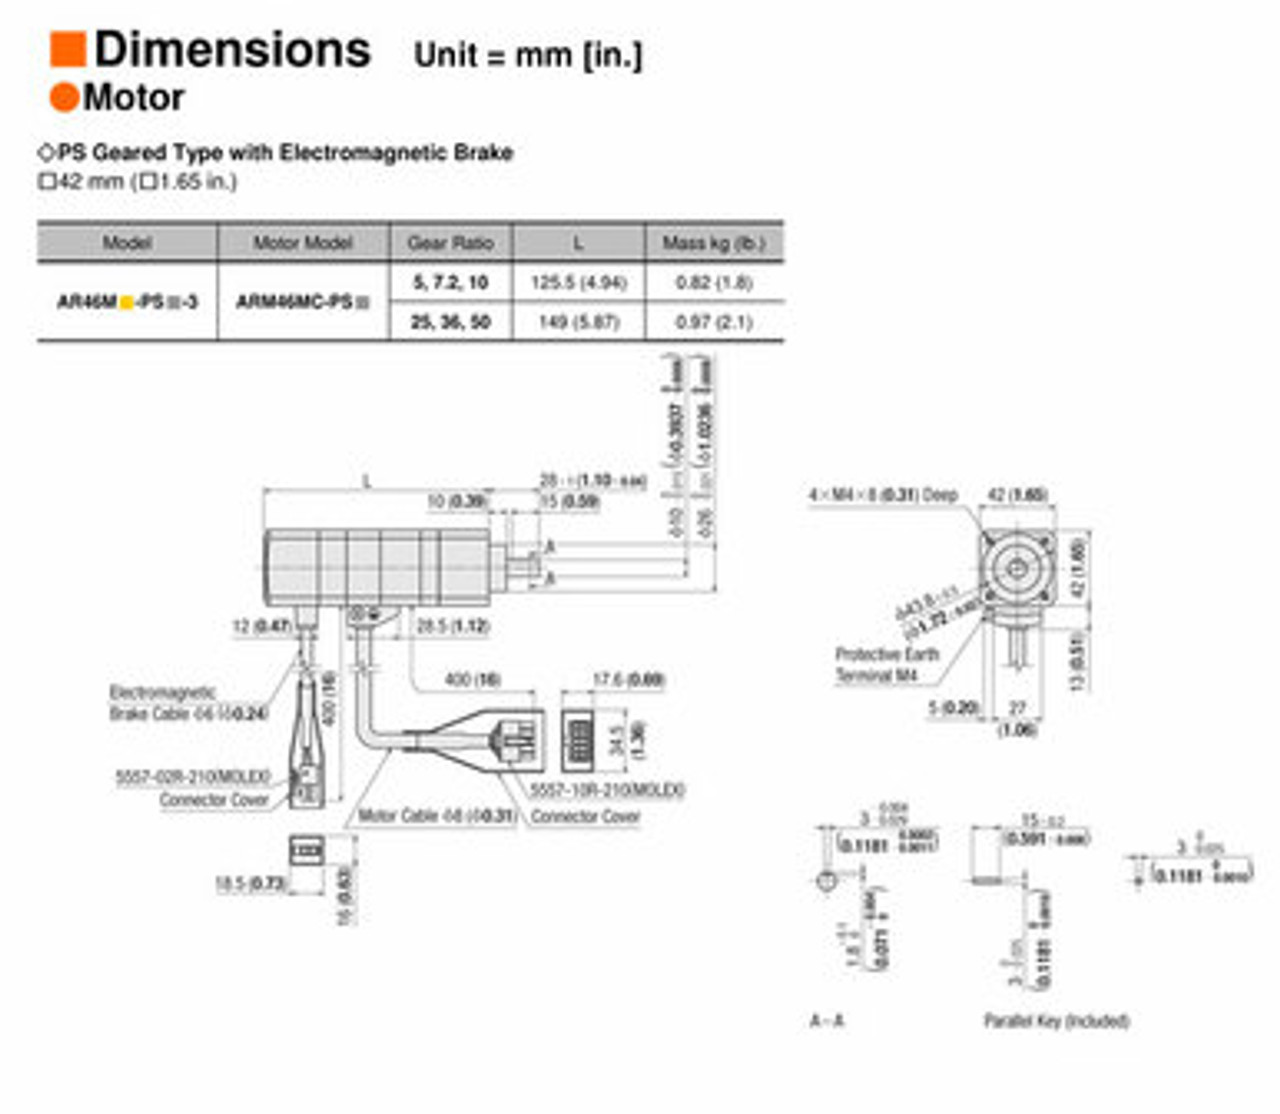 ARM46MC-PS36 - Dimensions